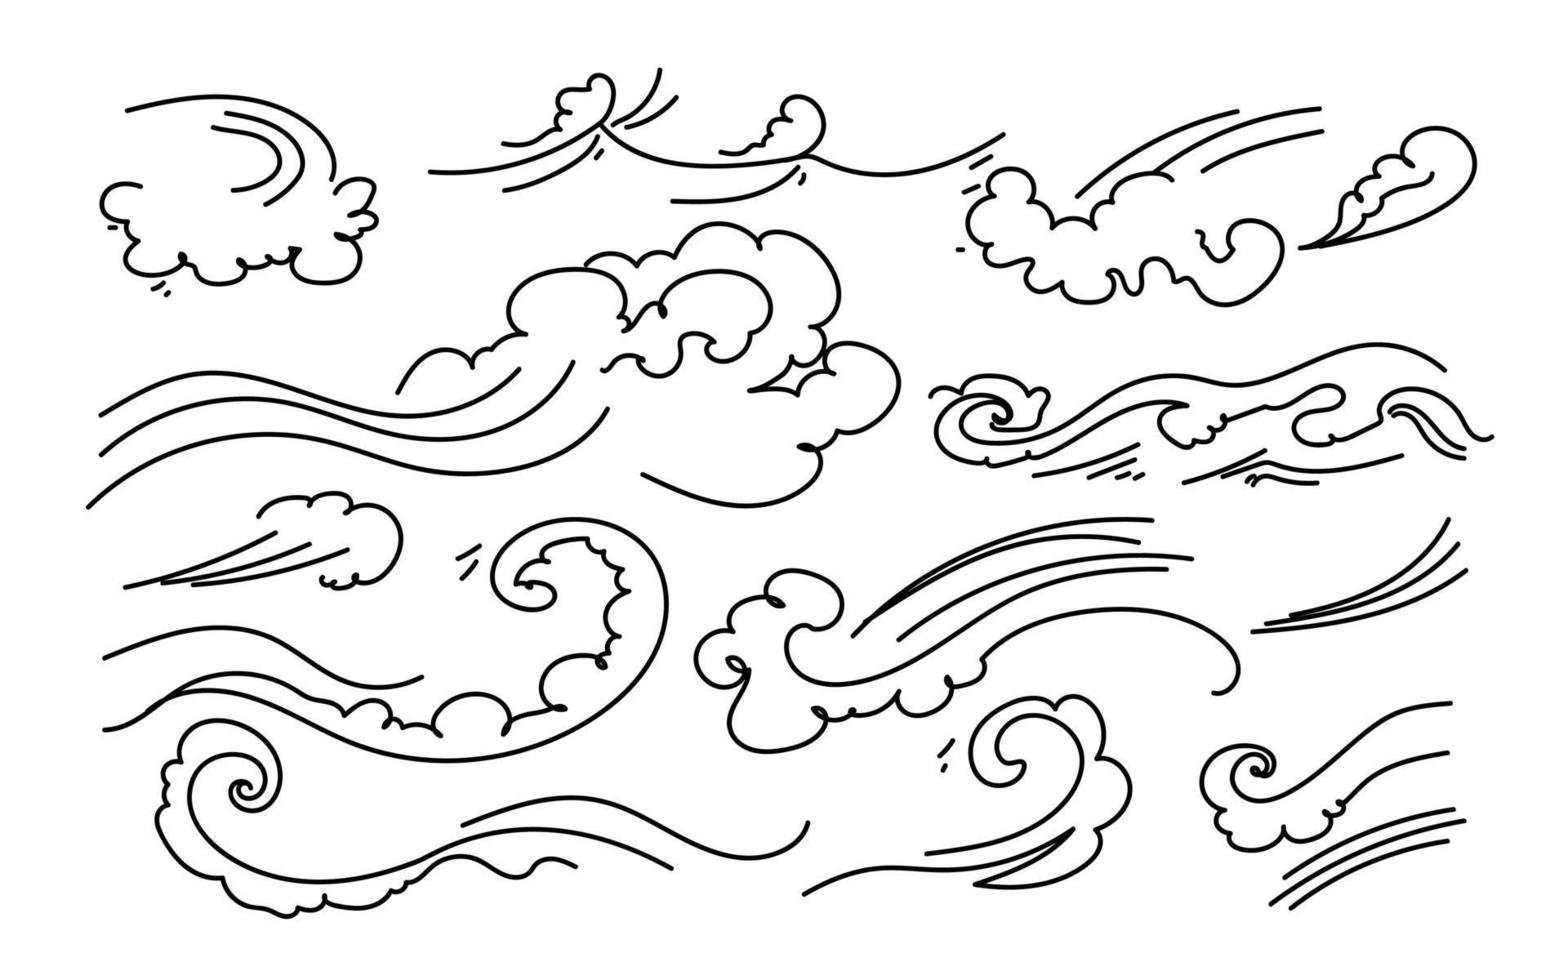 tsunami onde sfondo doodle schizzo vettore disegnato a mano.